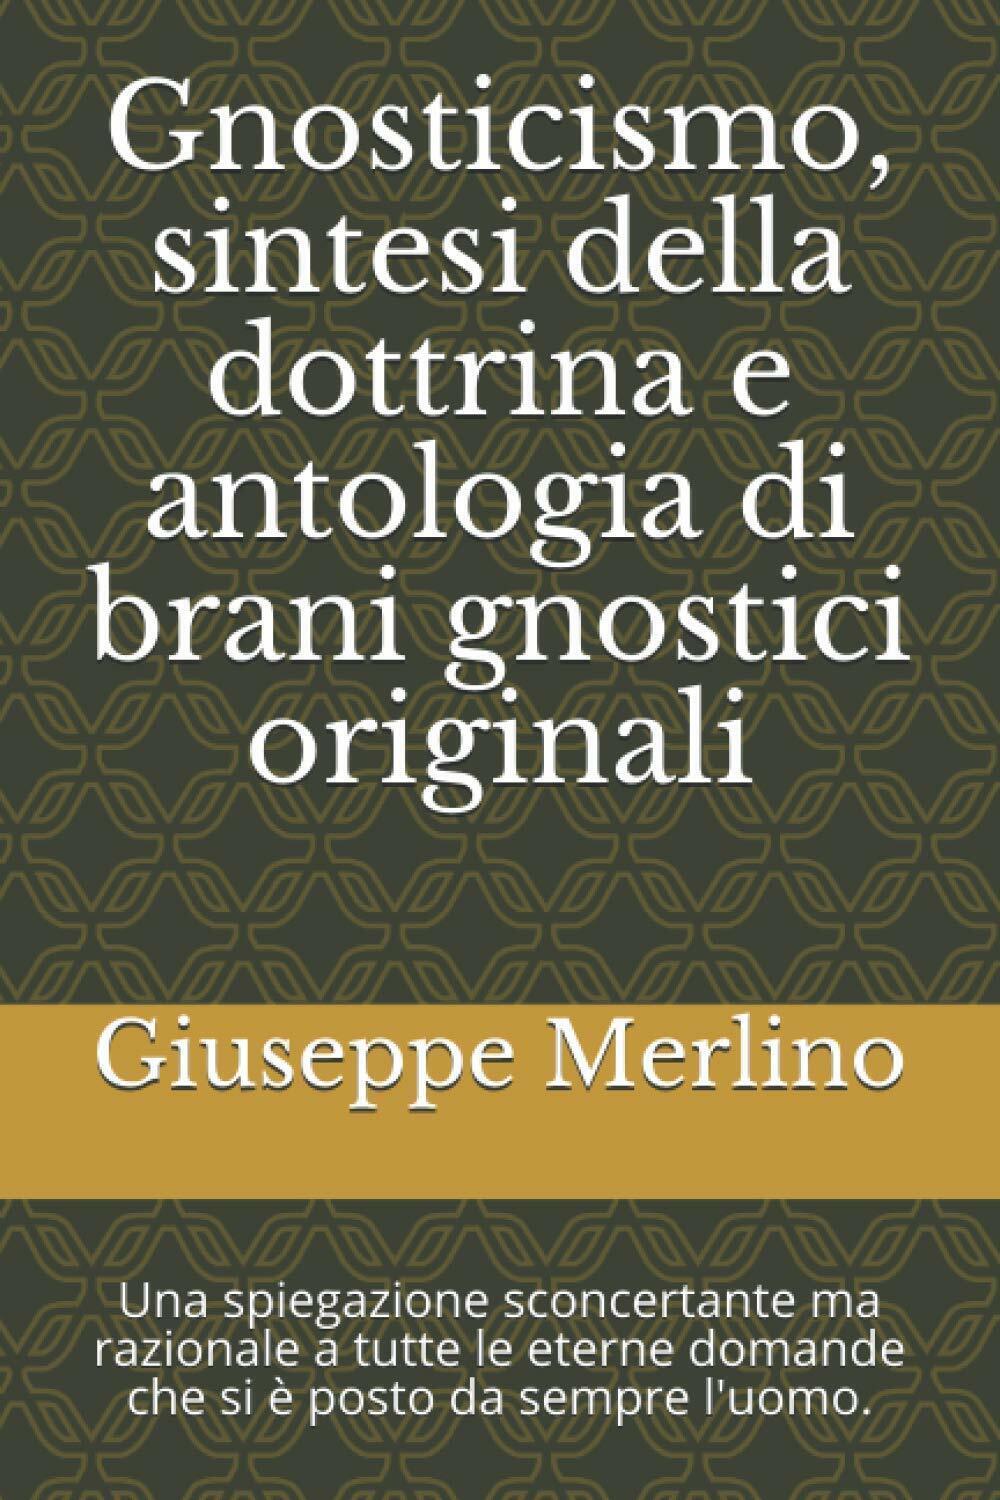 Gnosticismo, sintesi della dottrina e antologia di brani gnostici originali: Una